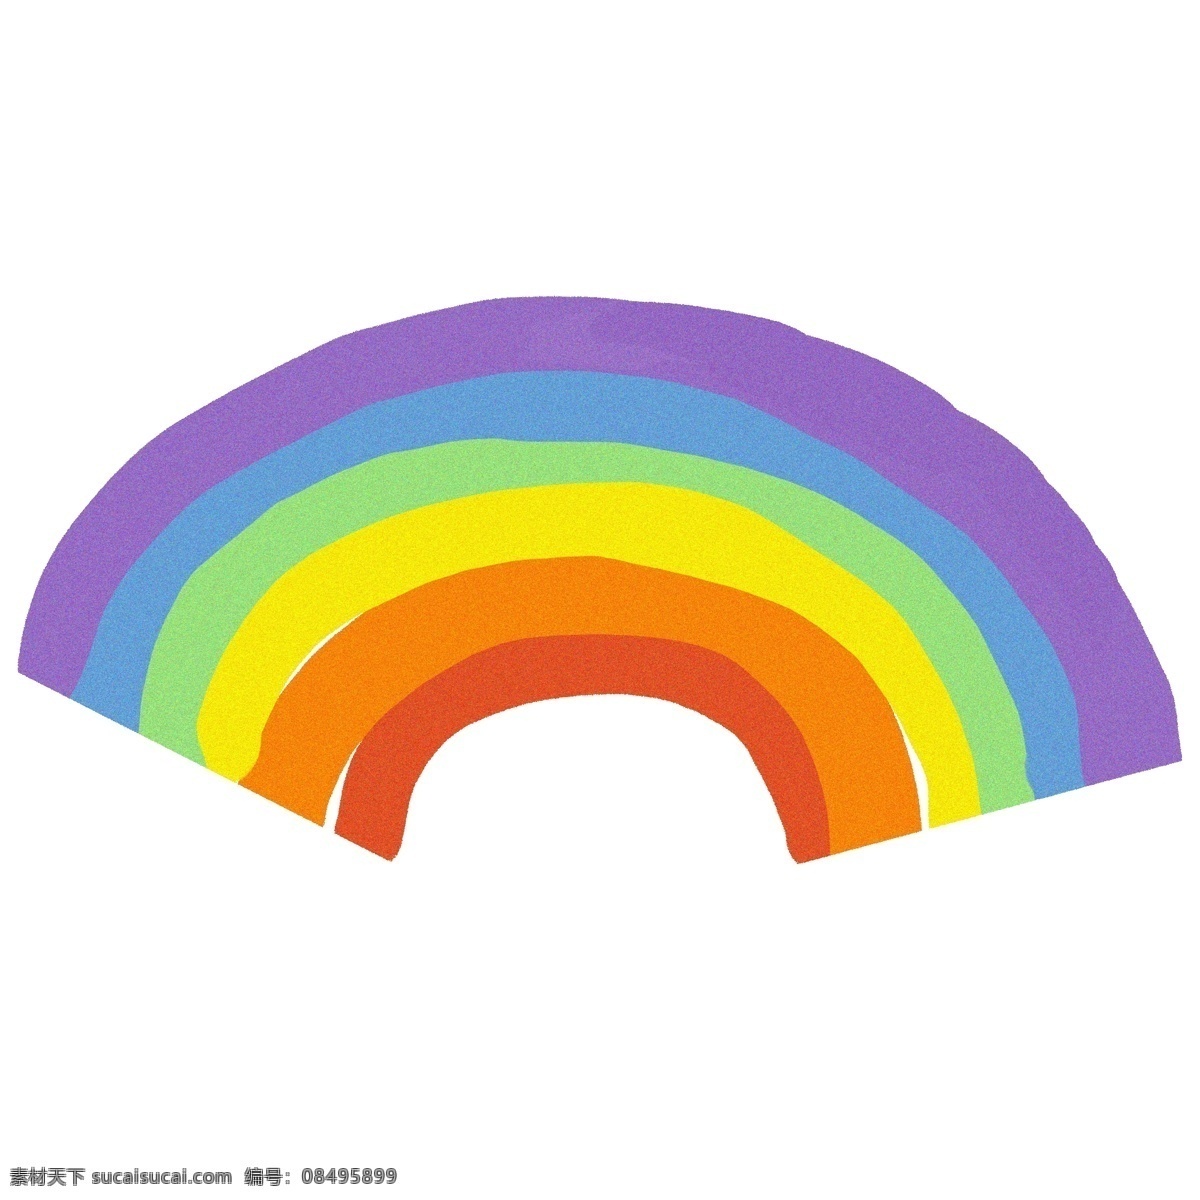 卡通 简约 彩色 彩虹 装饰 装饰元素 彩色彩虹 插画元素 免扣素材 简约风